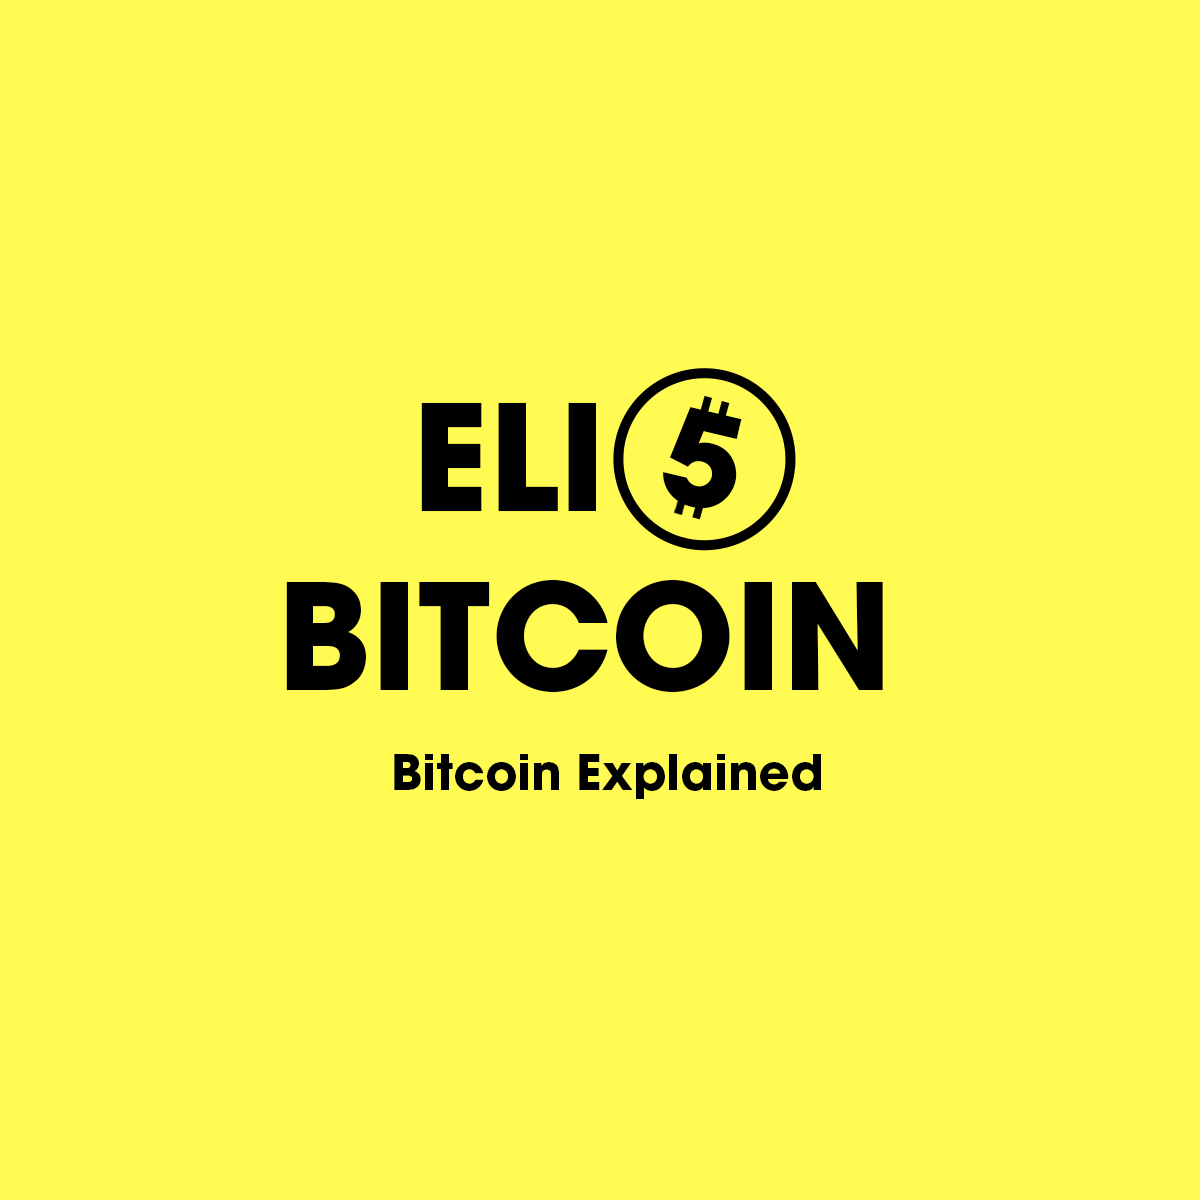 bitcoin reddit eli5 bitkoinų išteklių